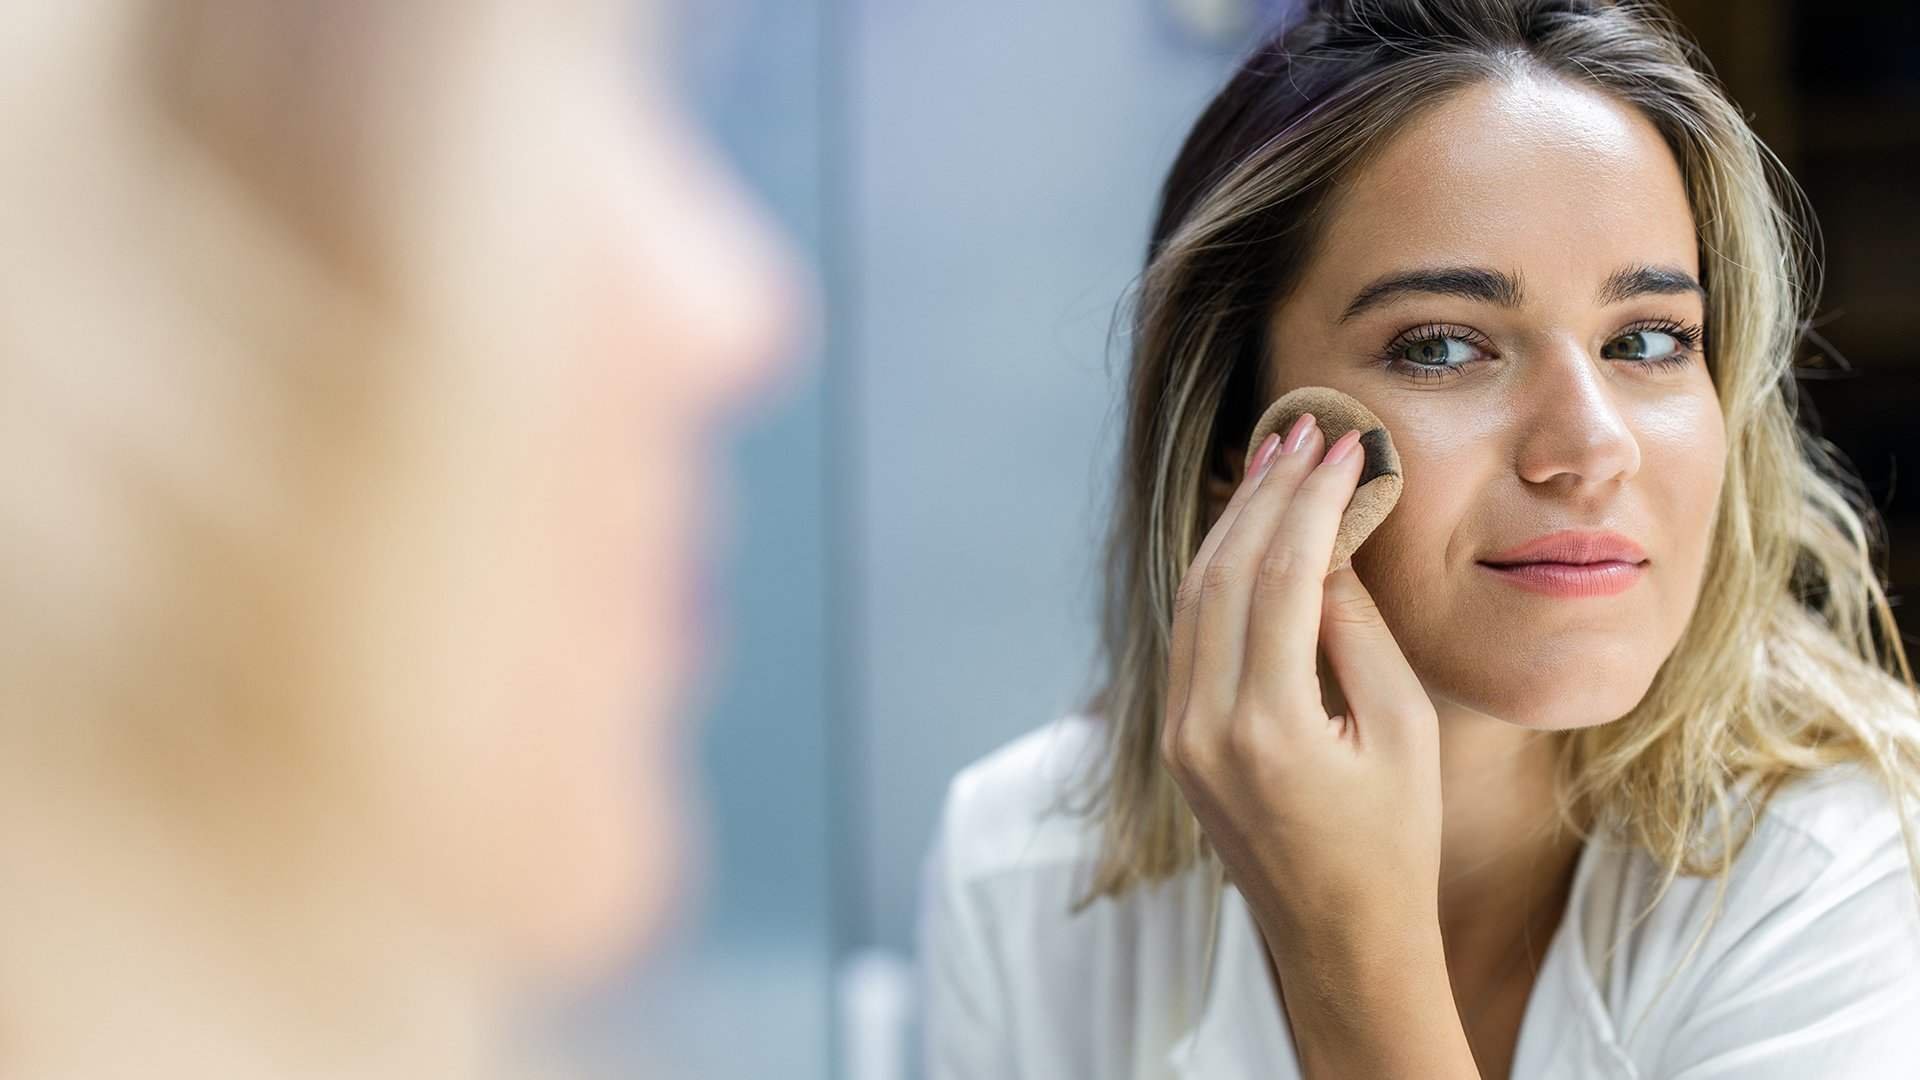 Loreal Paris Article How To Stop Makeup Pilling D